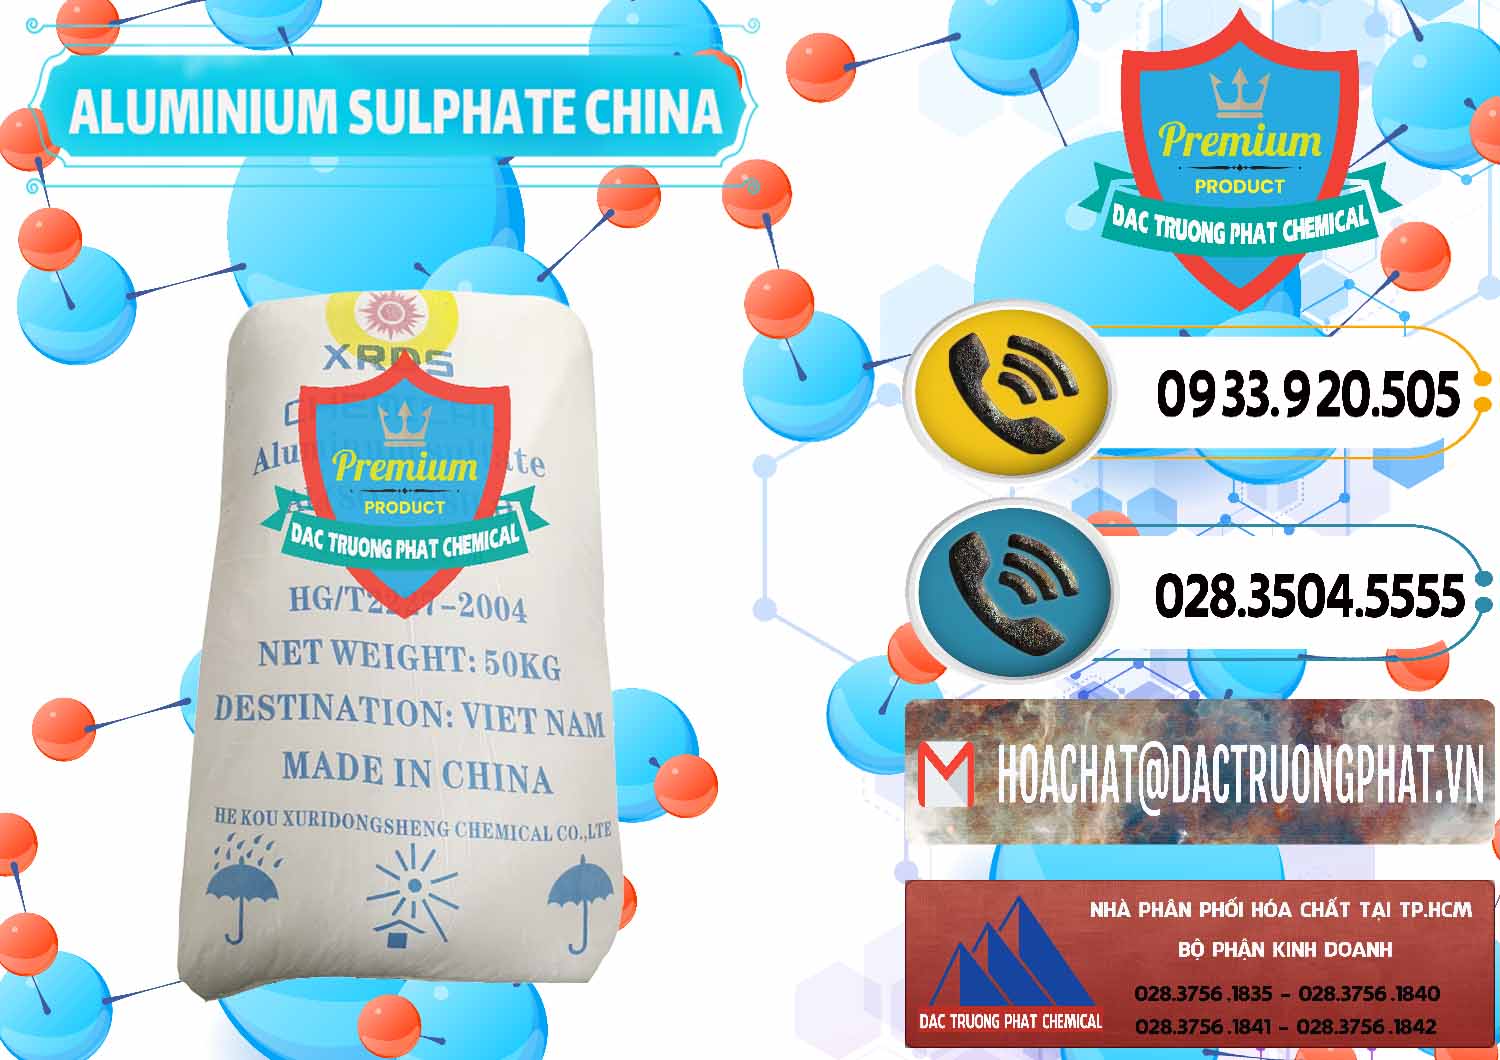 Đơn vị chuyên bán ( cung cấp ) Phèn Nhôm - Al2(SO4)3 17% Trung Quốc China - 0464 - Cty nhập khẩu và cung cấp hóa chất tại TP.HCM - hoachatdetnhuom.vn